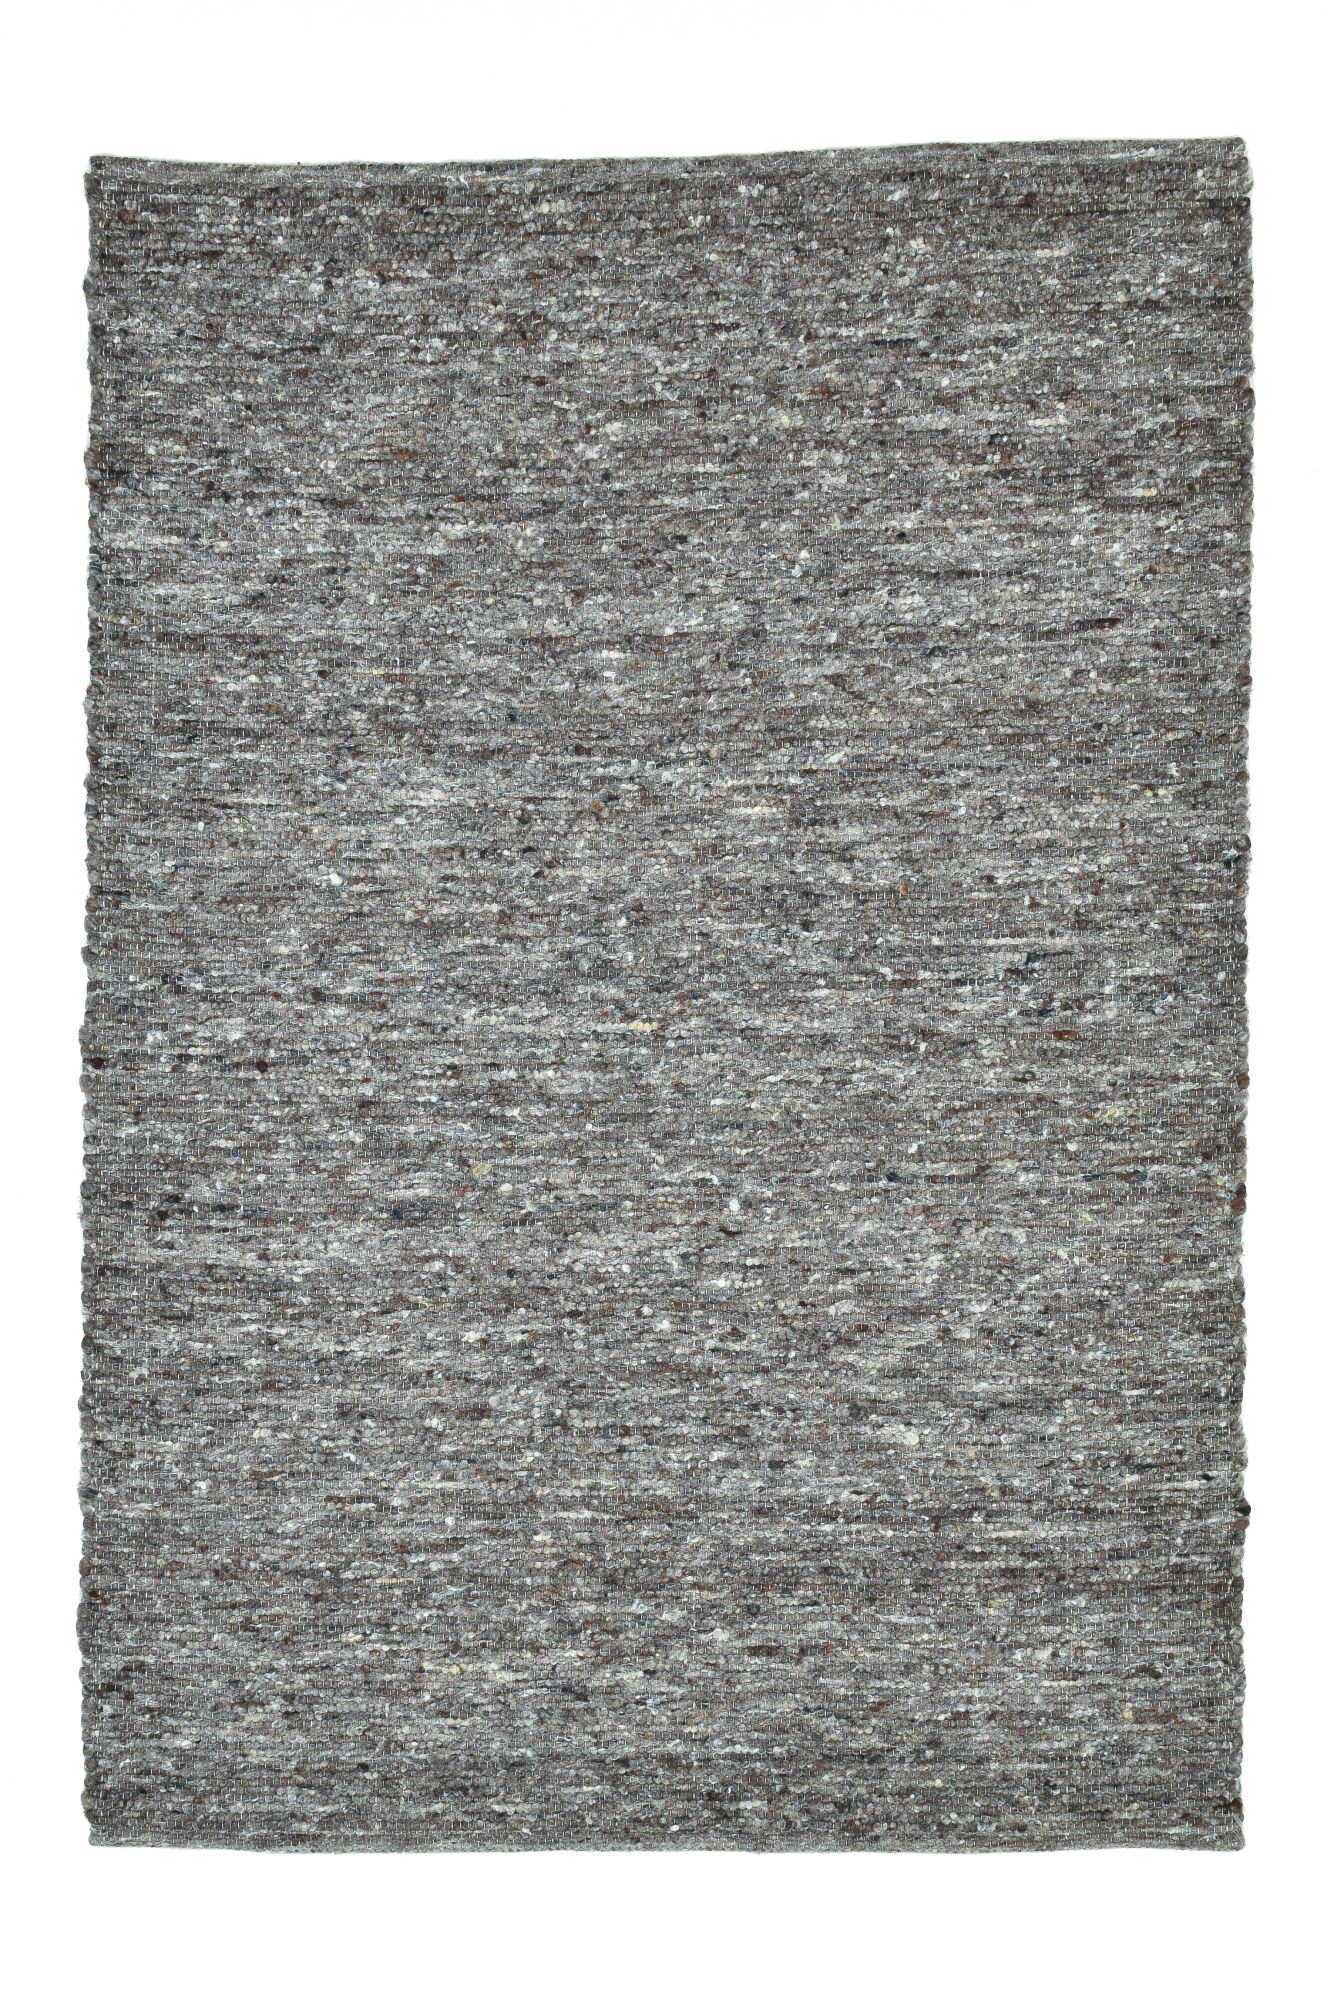 Tapis tissé à la main en laine naturelle gris 70x130